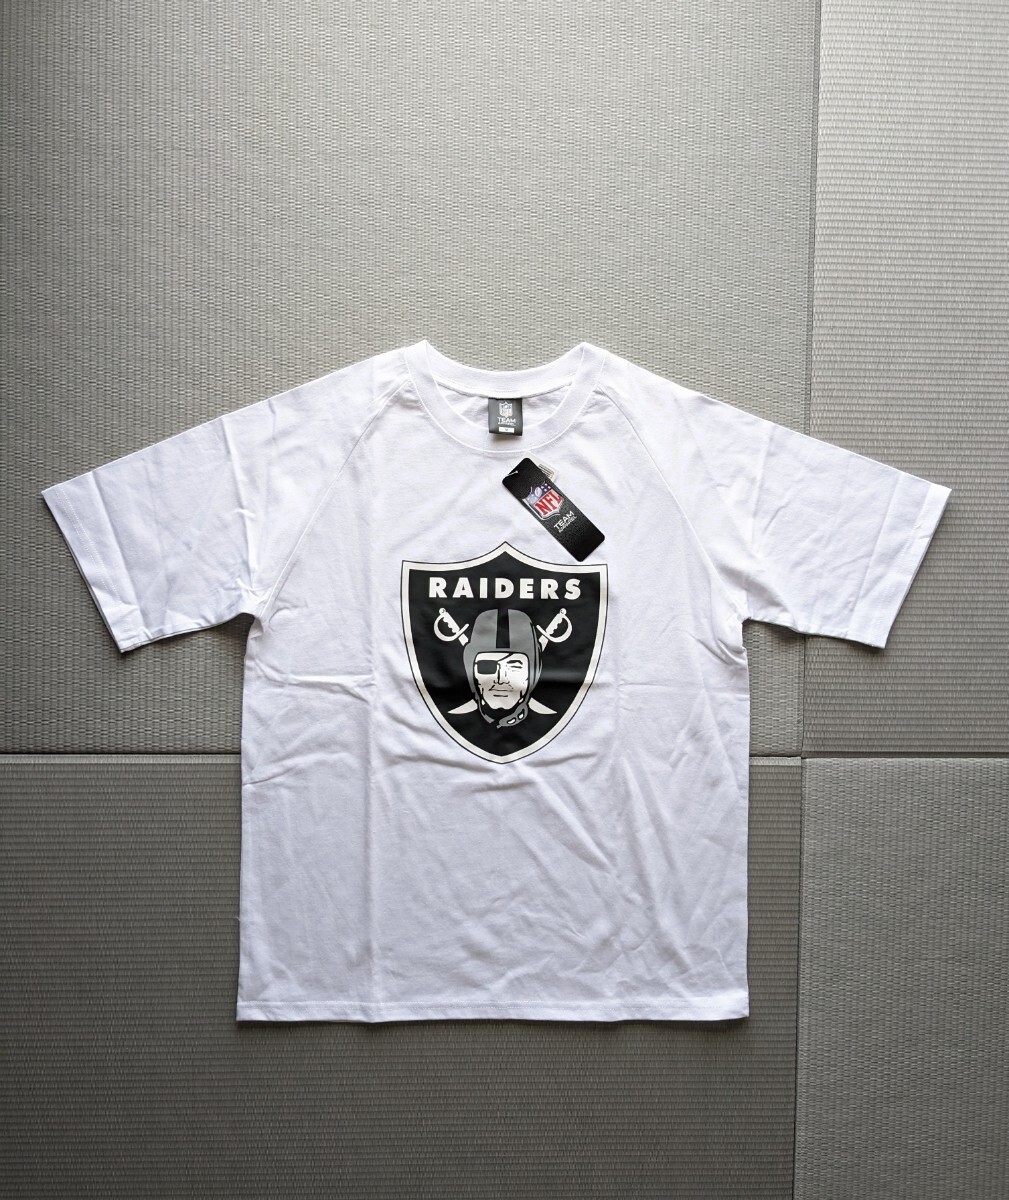 新品 RAIDERS Tシャツ 未使用 レイダース NFL オフィシャルグッズ ホワイト 白 Lサイズの画像2